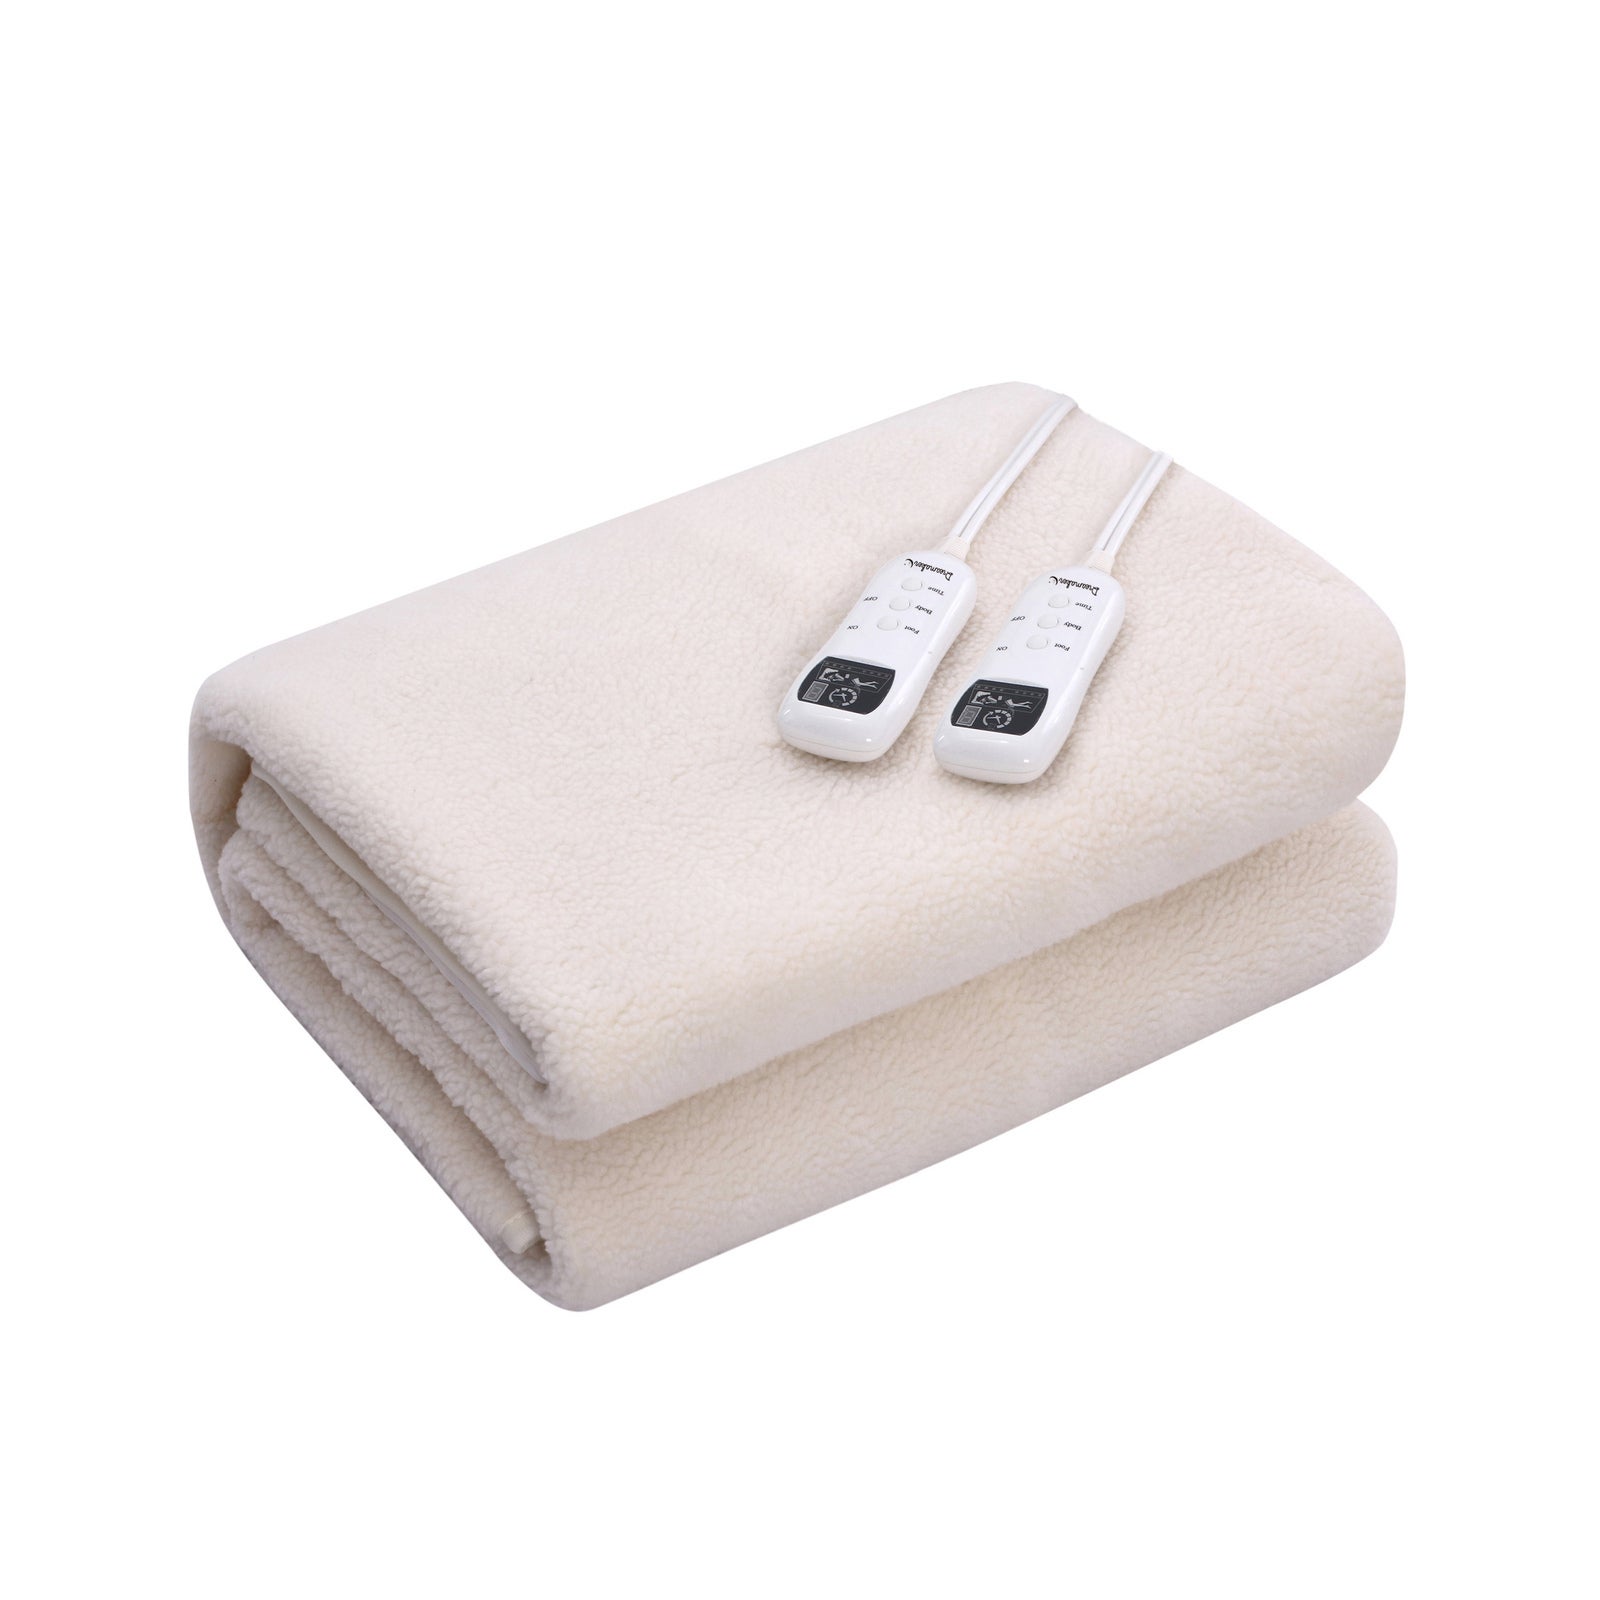 Dreamaker Fleece Top Multizone Electric Blanket - Queen Bed